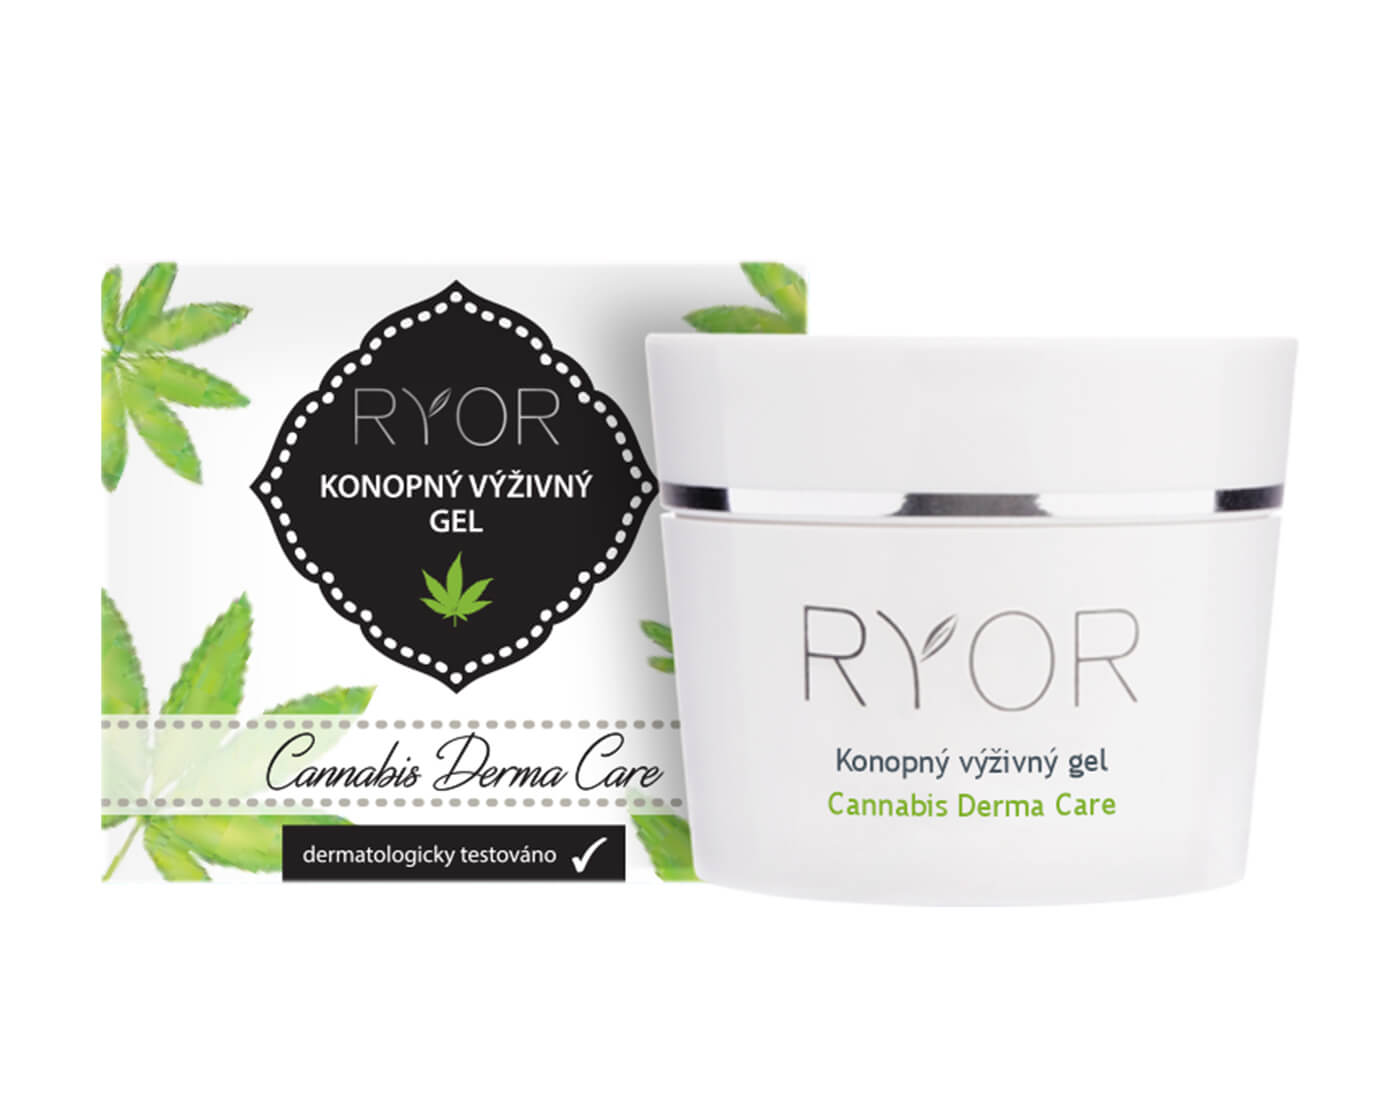 Zobrazit detail výrobku RYOR Konopný výživný gel 1 % Cannabis Derma Care 50 ml